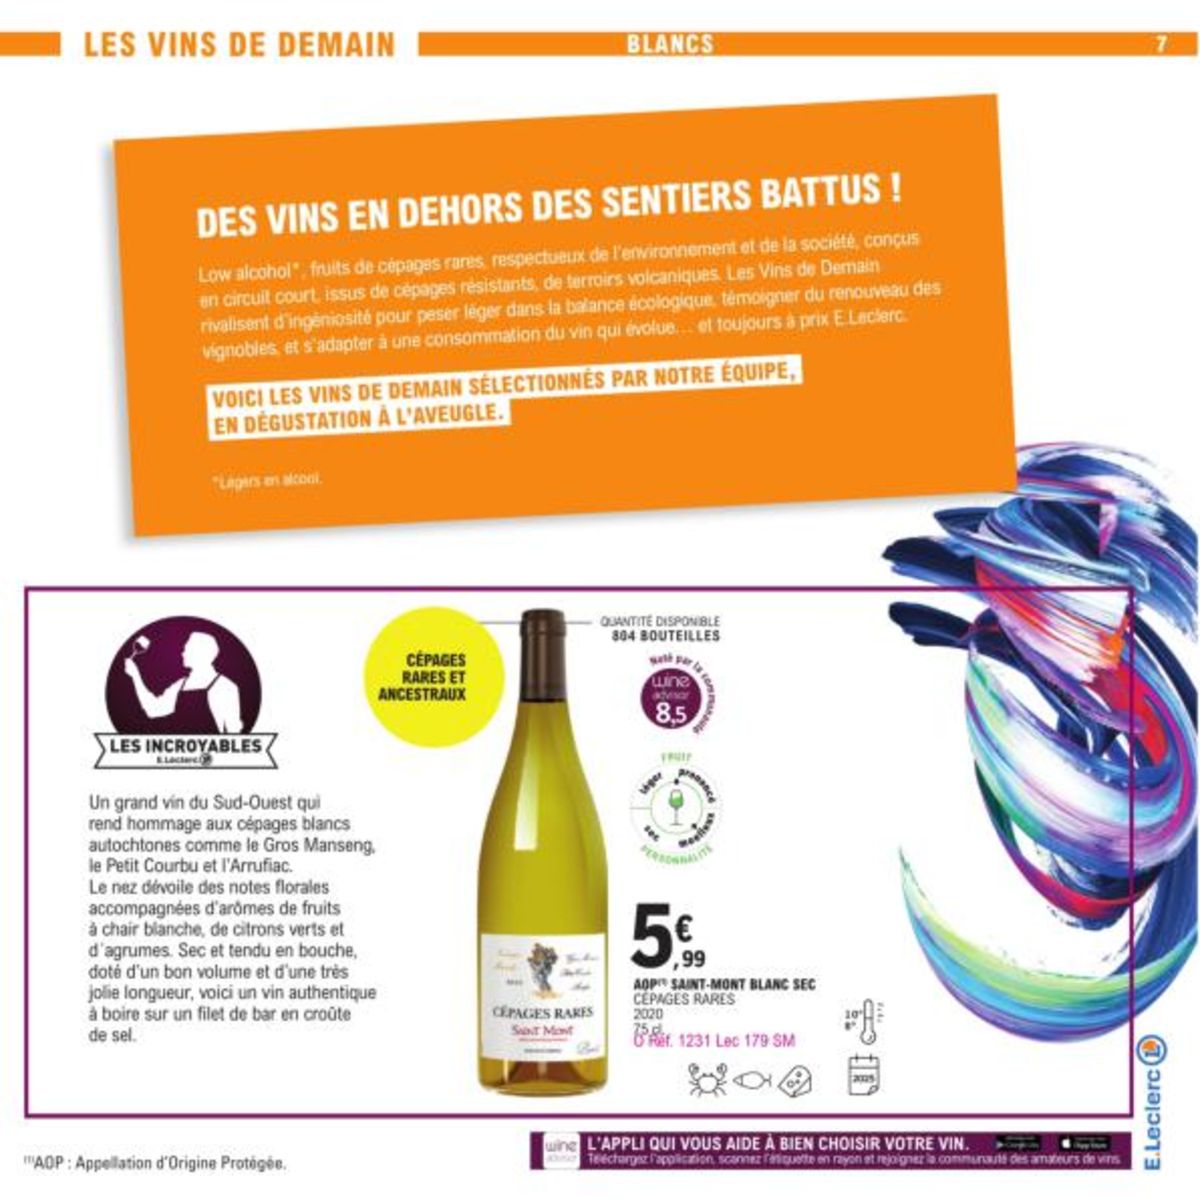 Catalogue Foire Aux Vins - Mixte, page 02922